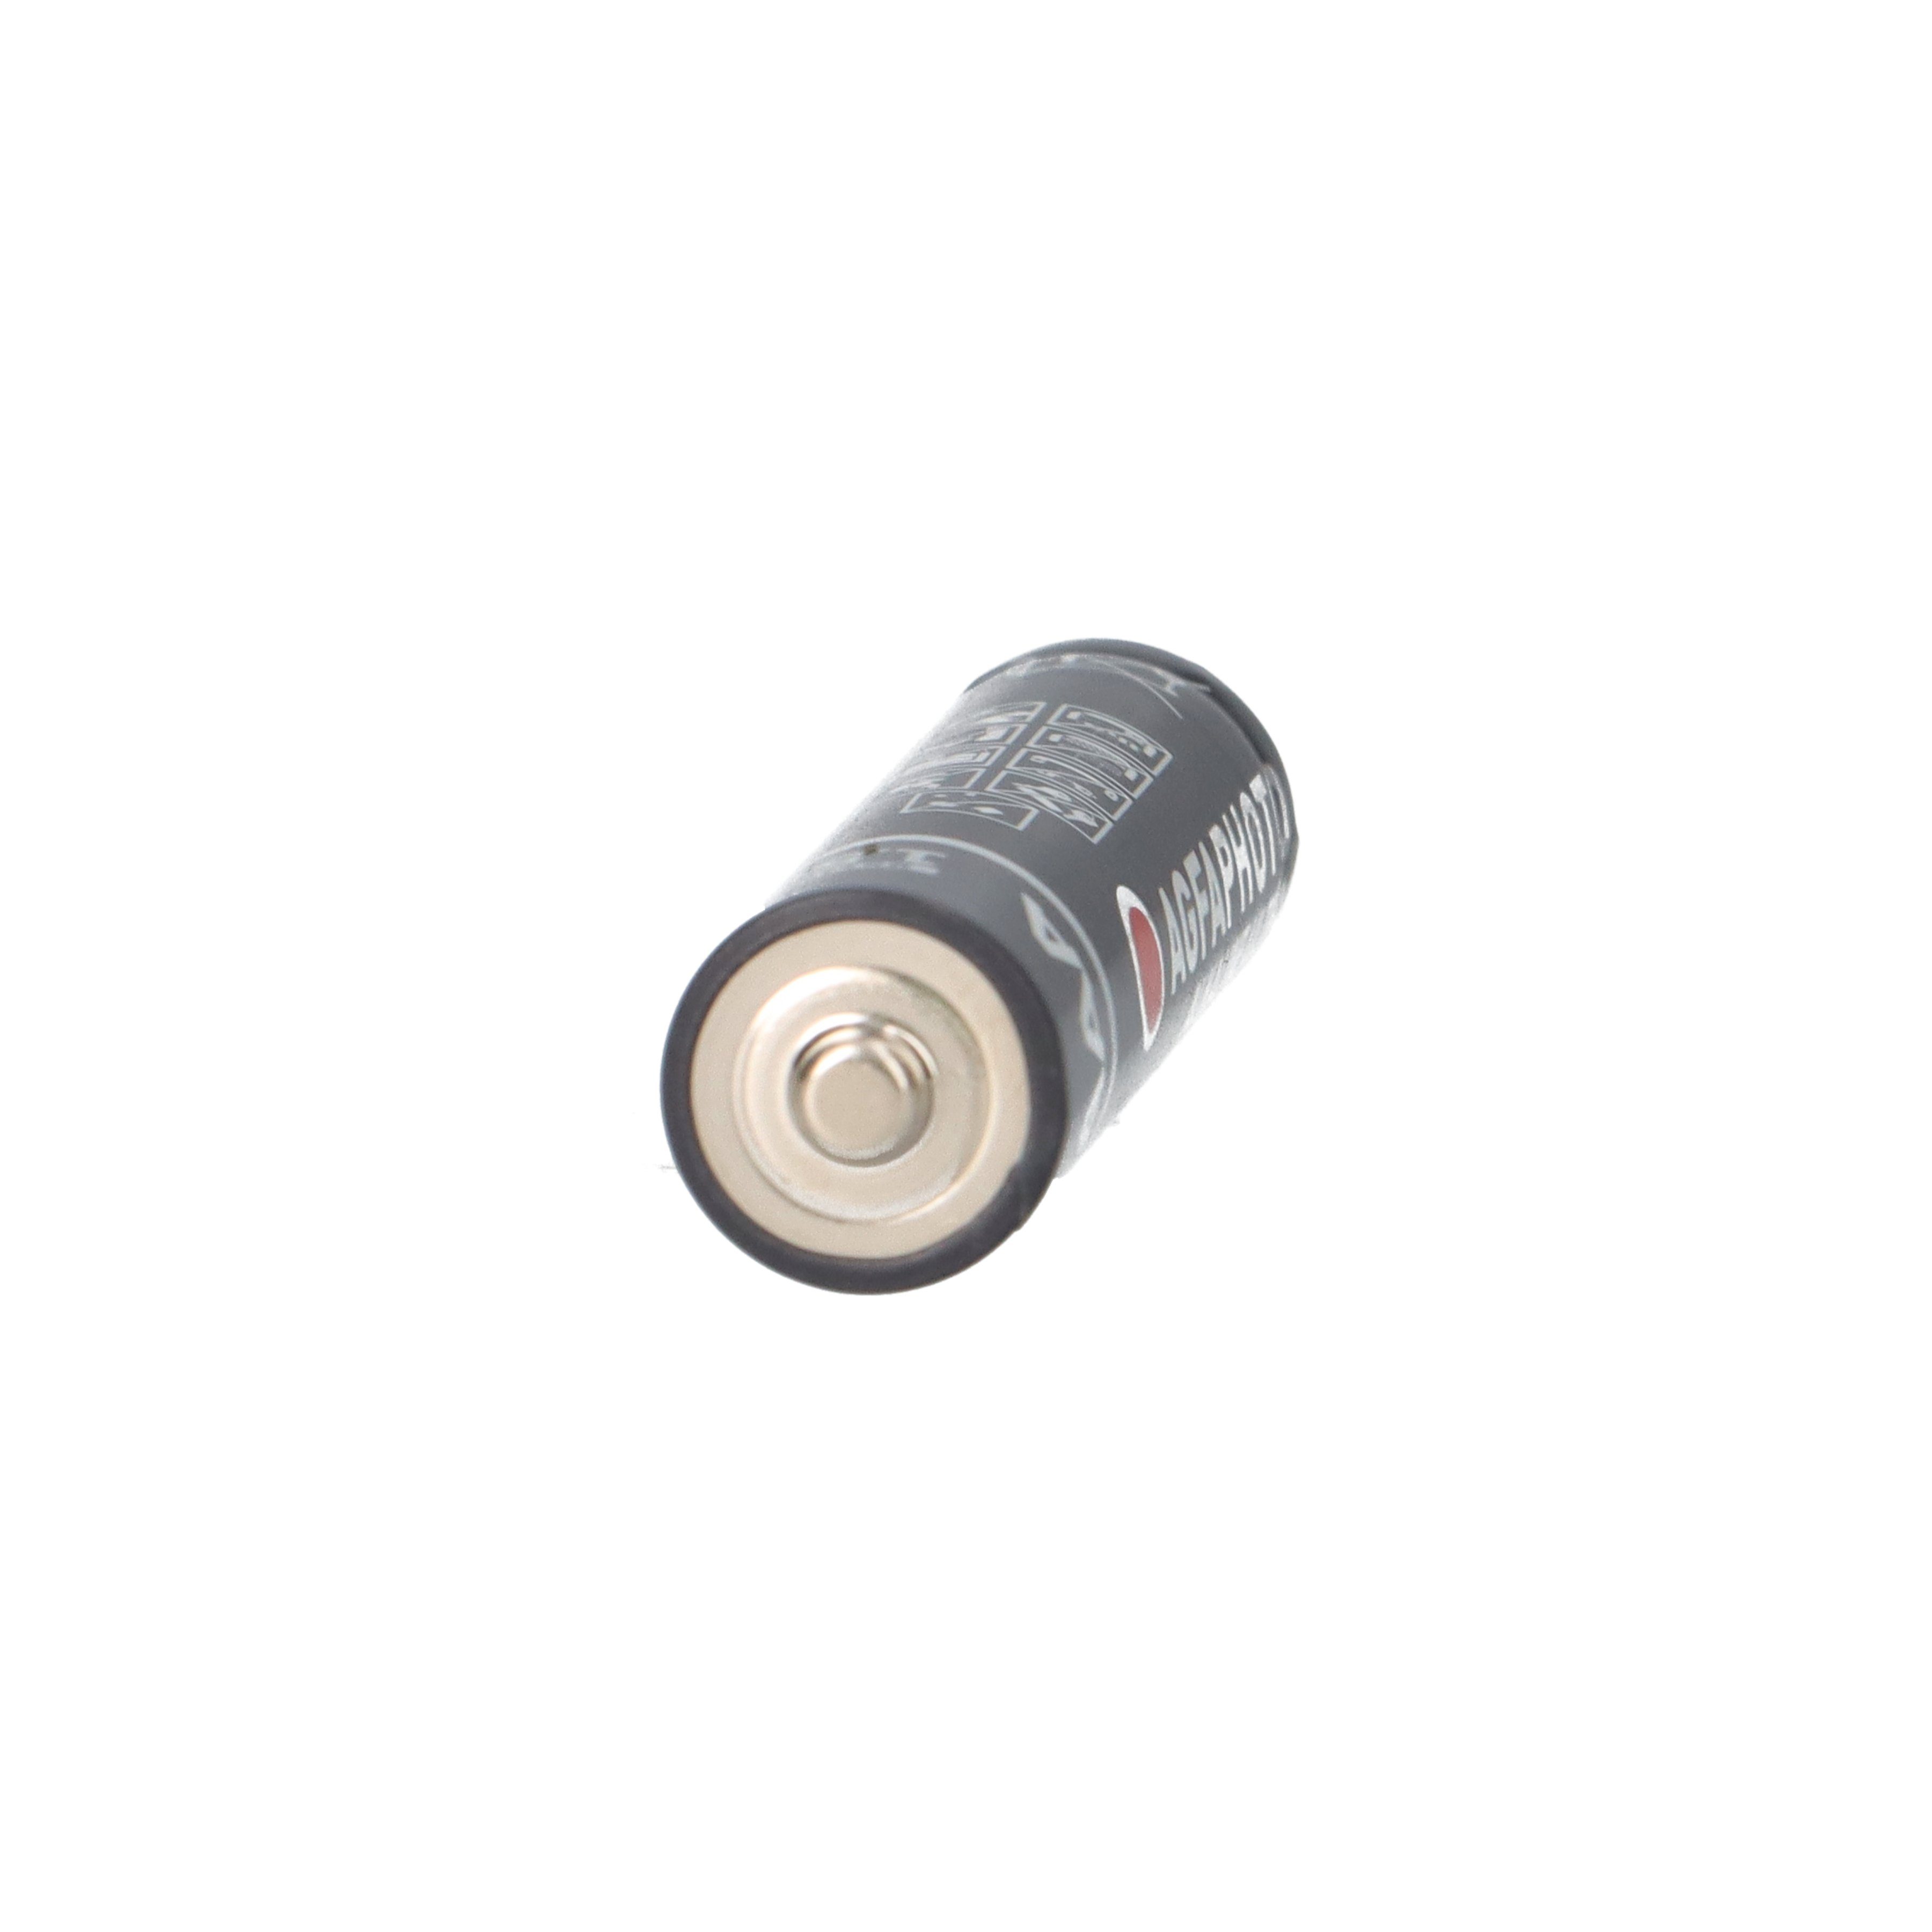 AGFAPHOTO Batterie Batterie Alkaline 1.5V AAA Ultra 4er Blister AgfaPhoto